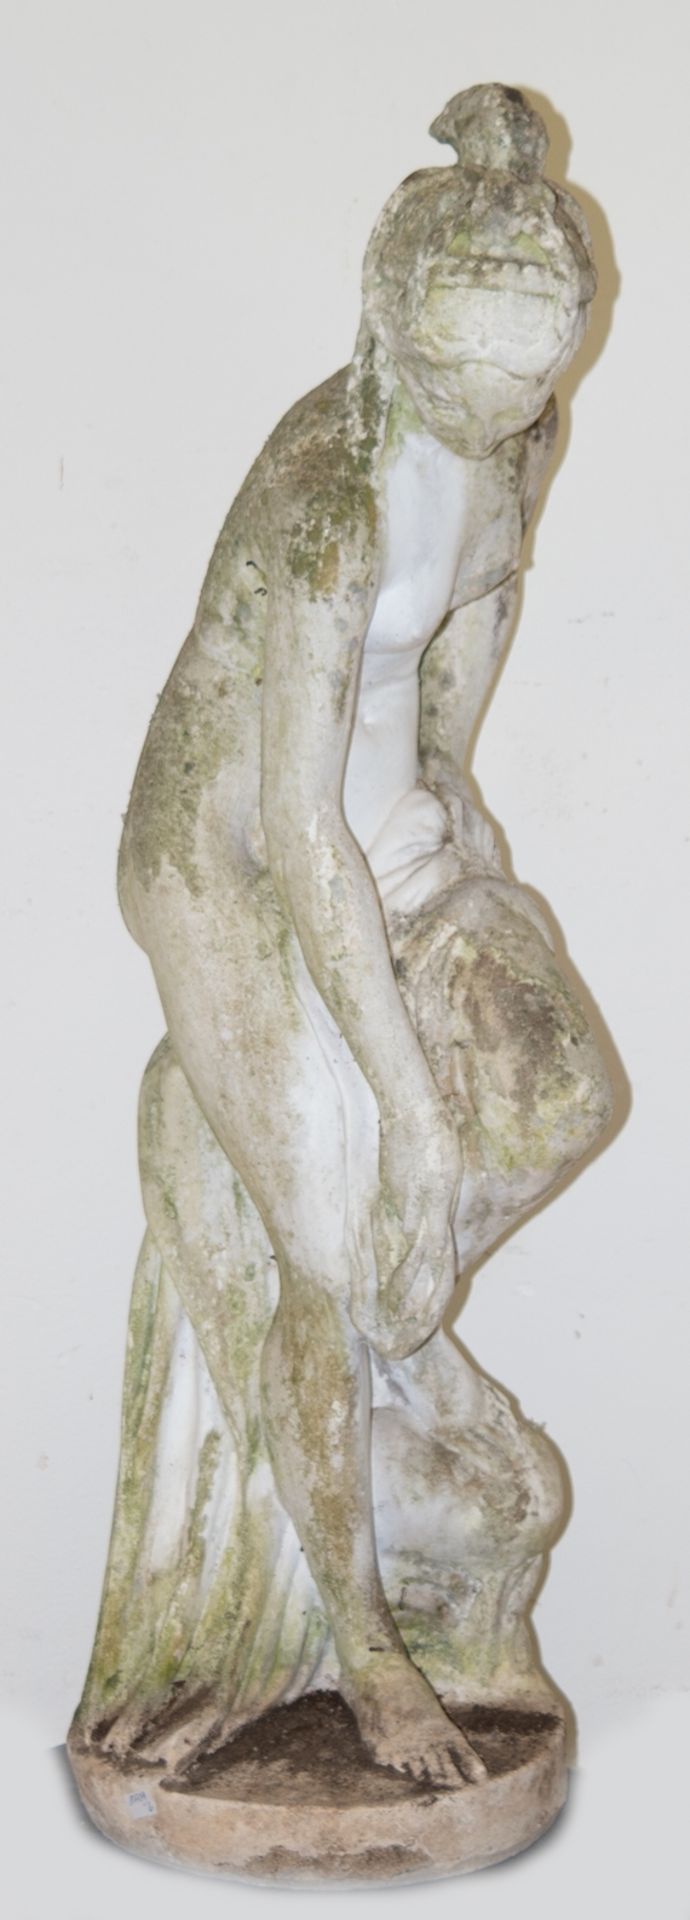 Gartenfigur "Nymphe", Steinguß, Witterungsspuren, H. 107 cm